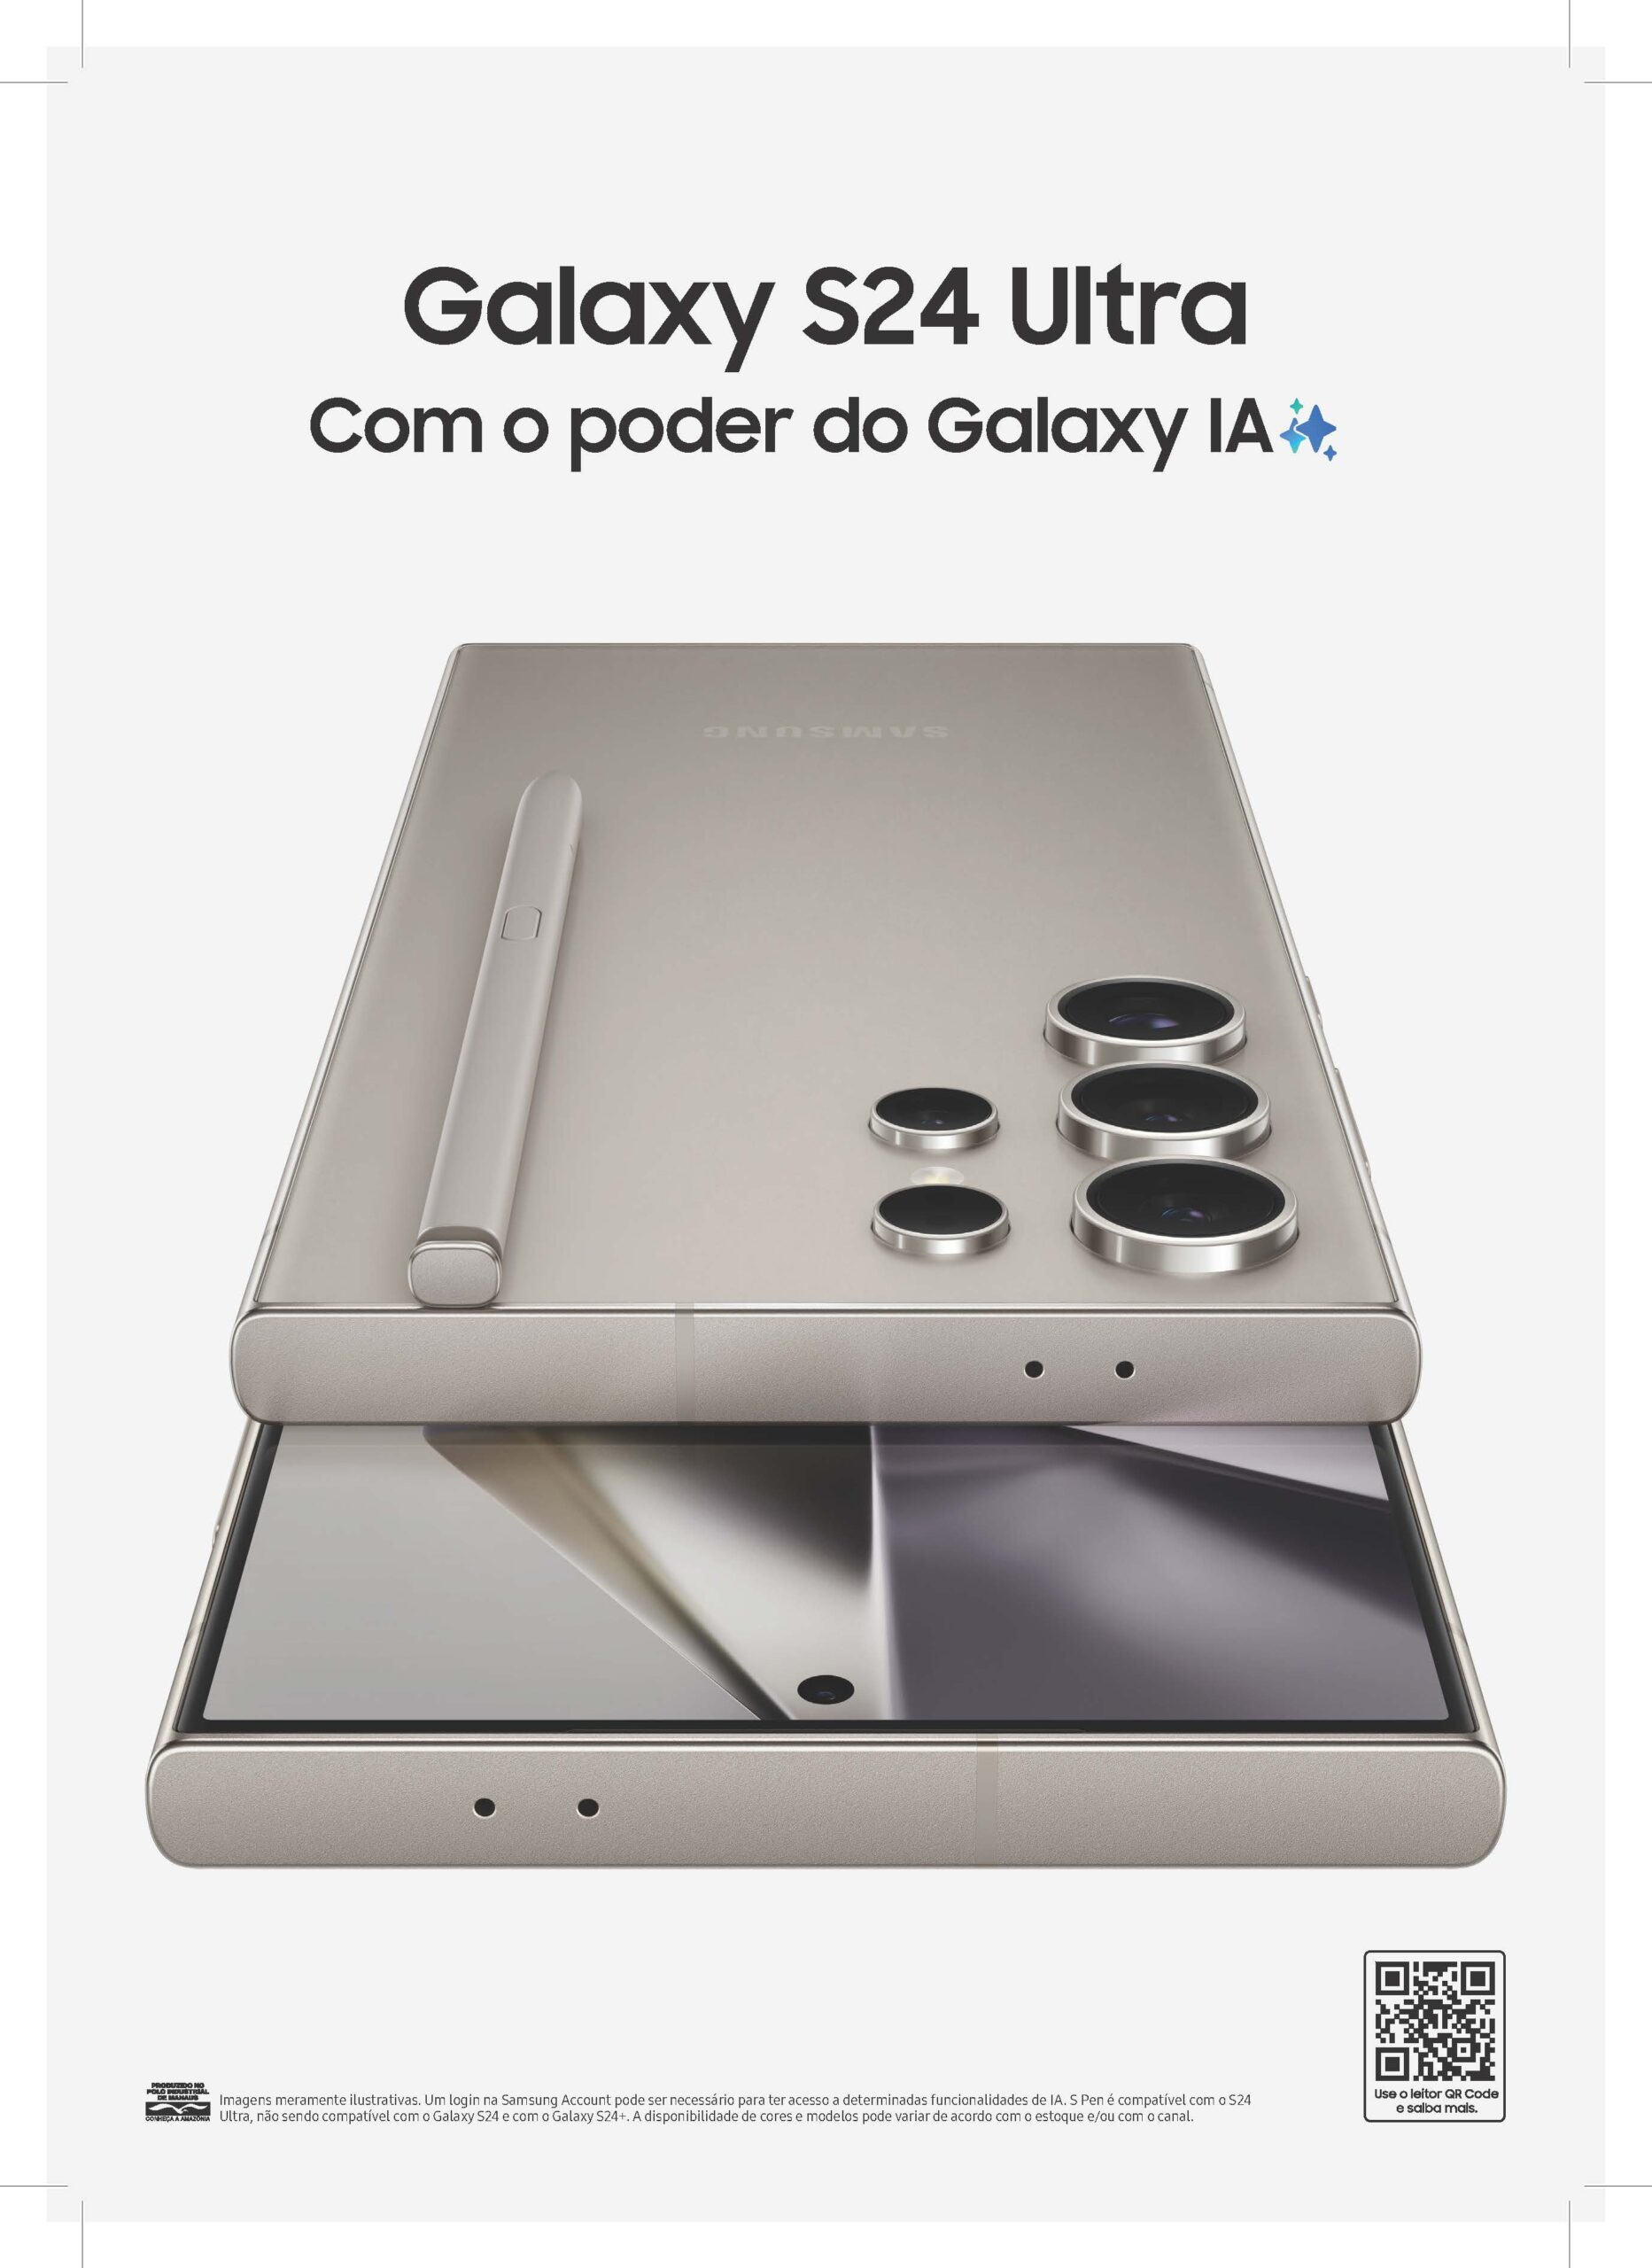 Galaxy S24 Ultra: pôster vazado no Brasil confirma design e recursos com IA  